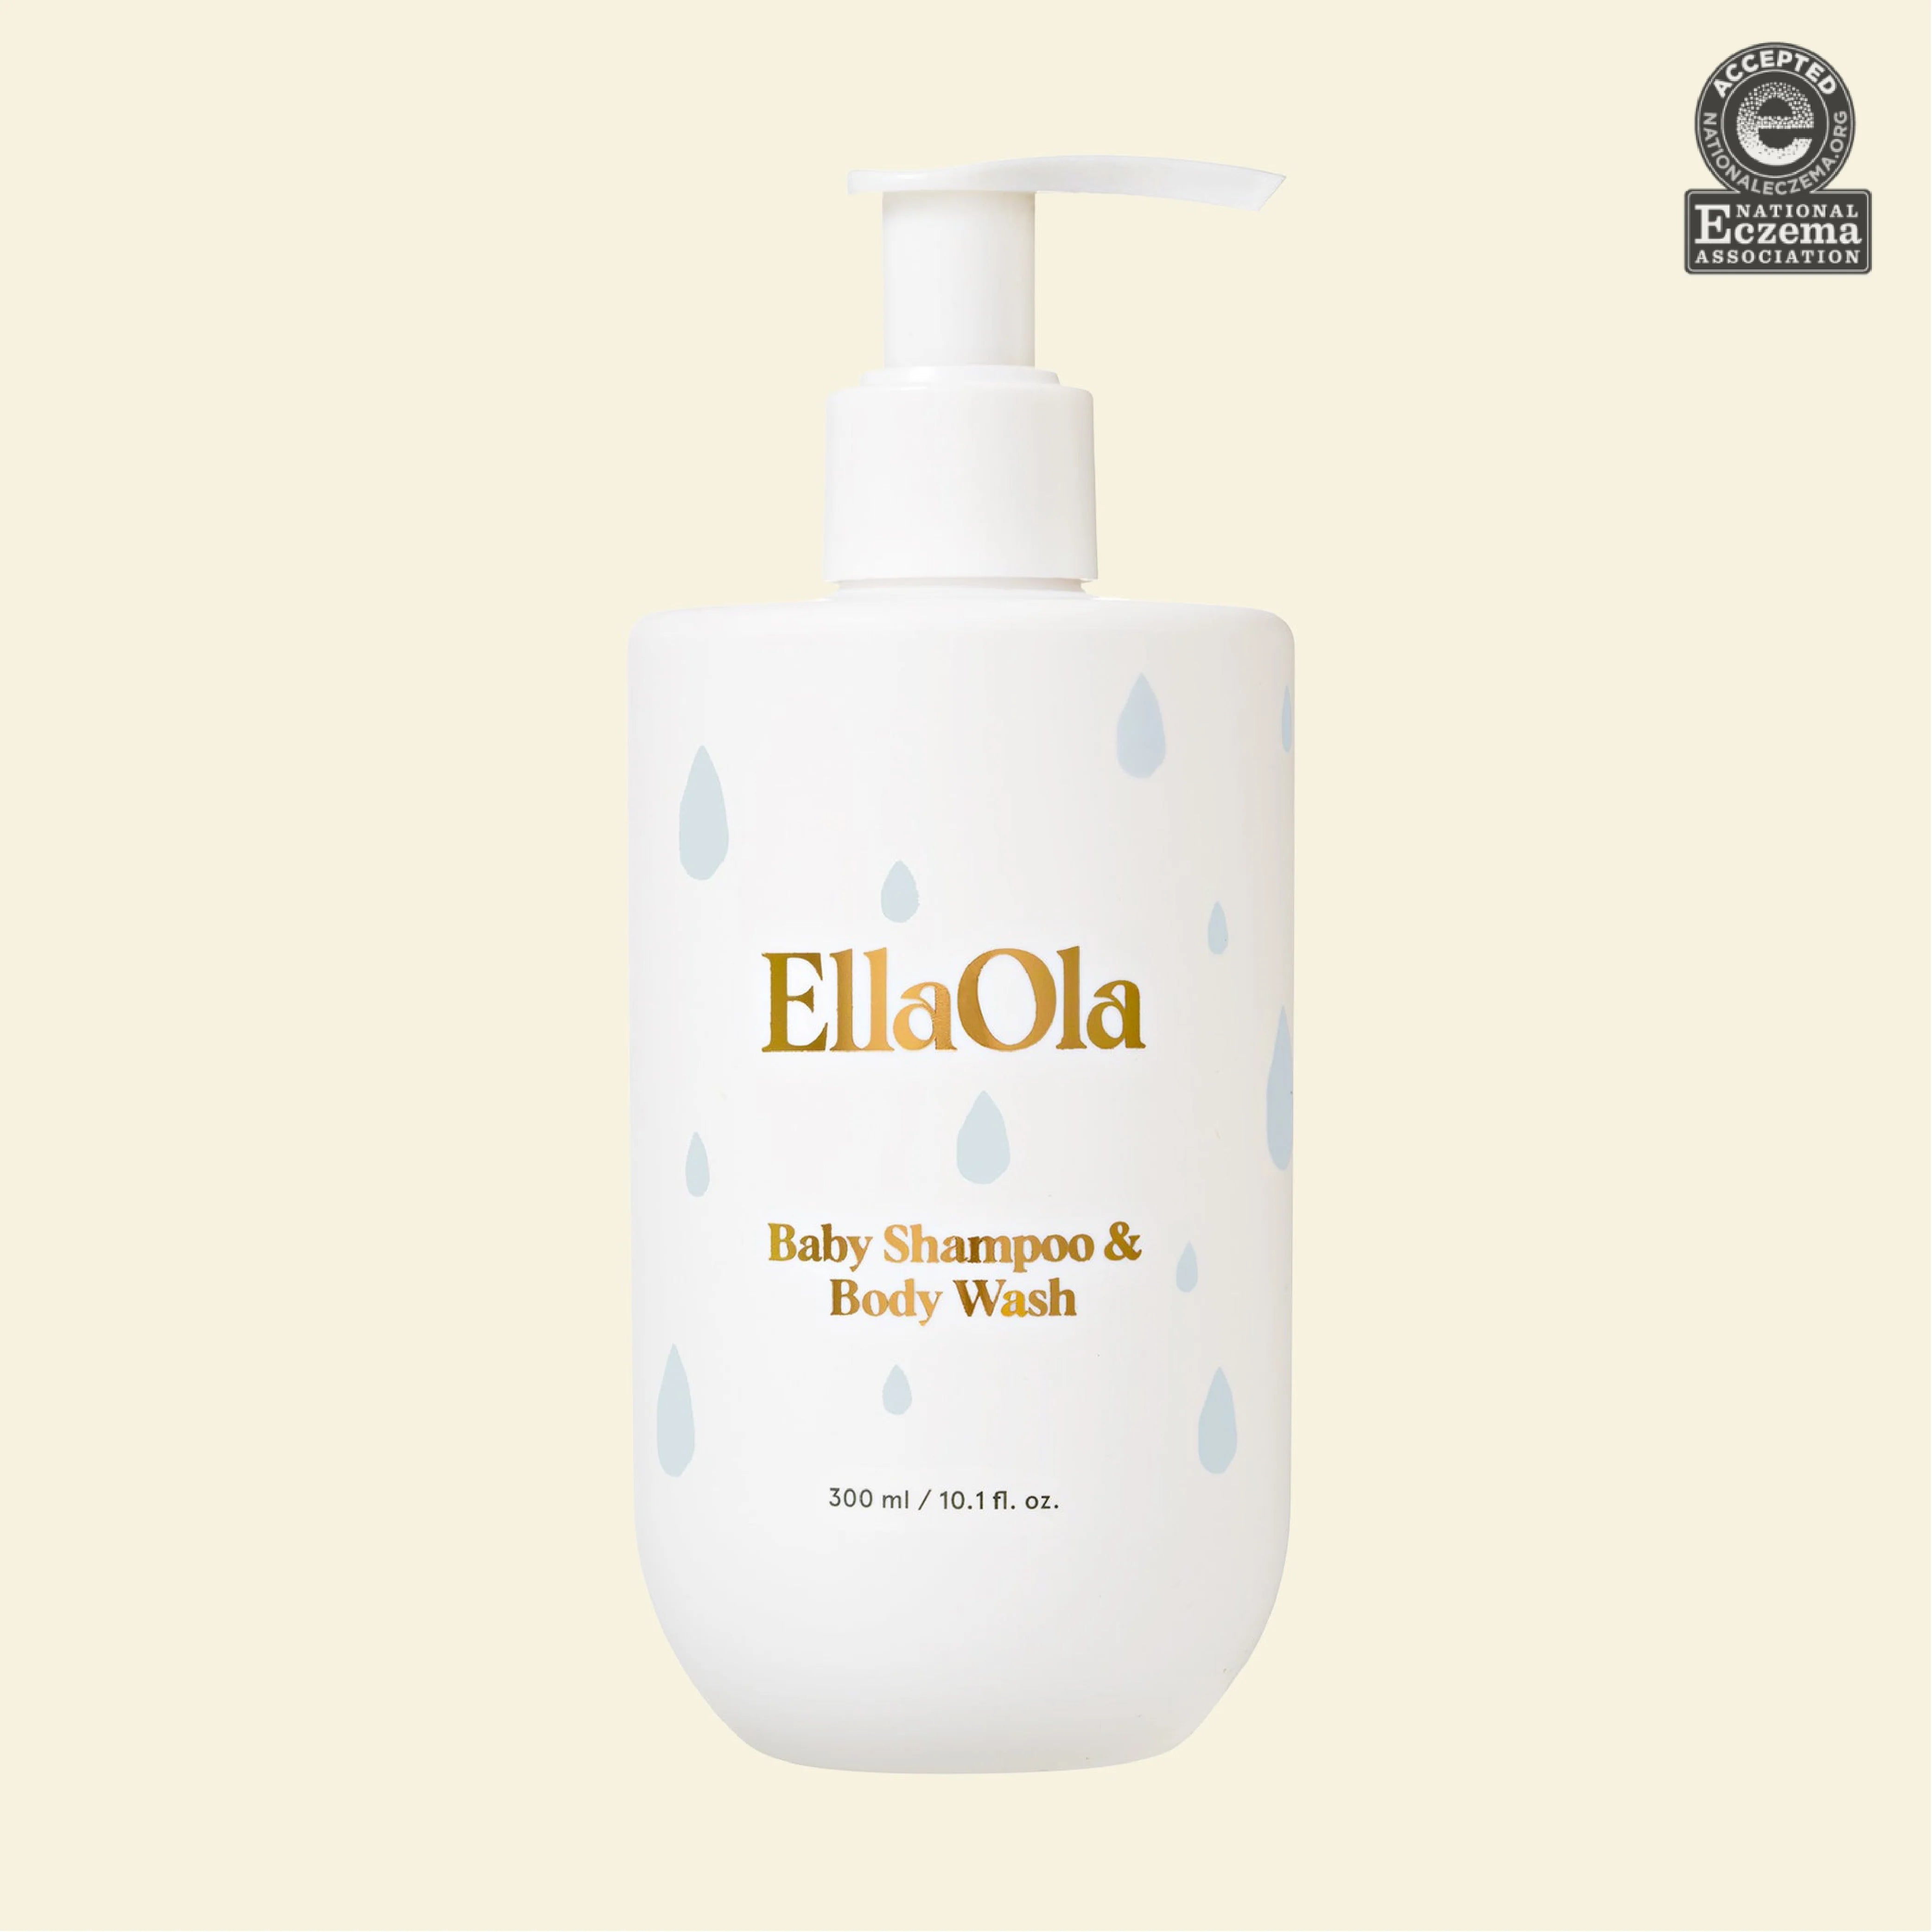 Ella Ola Baby Shampoo and Body Wash